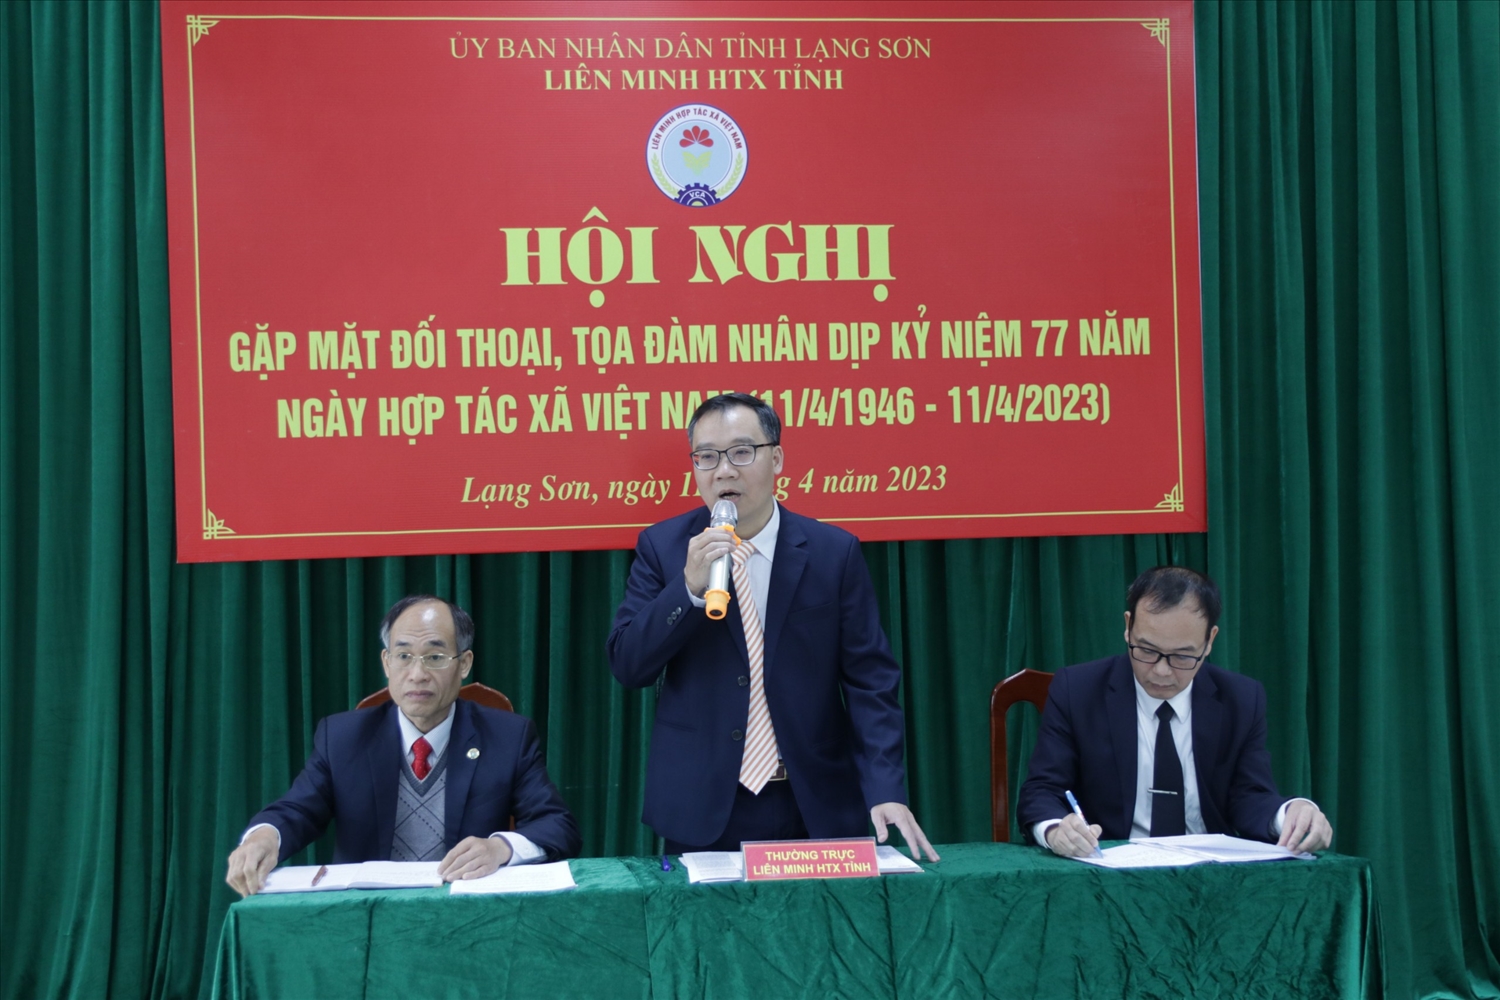 Lãnh đạo Liên minh HTX tỉnh Lạng Sơn trao đổi tại buổi gặp mặt đối thoại, tọa đàm nhân Ngày HTX Việt Nam.